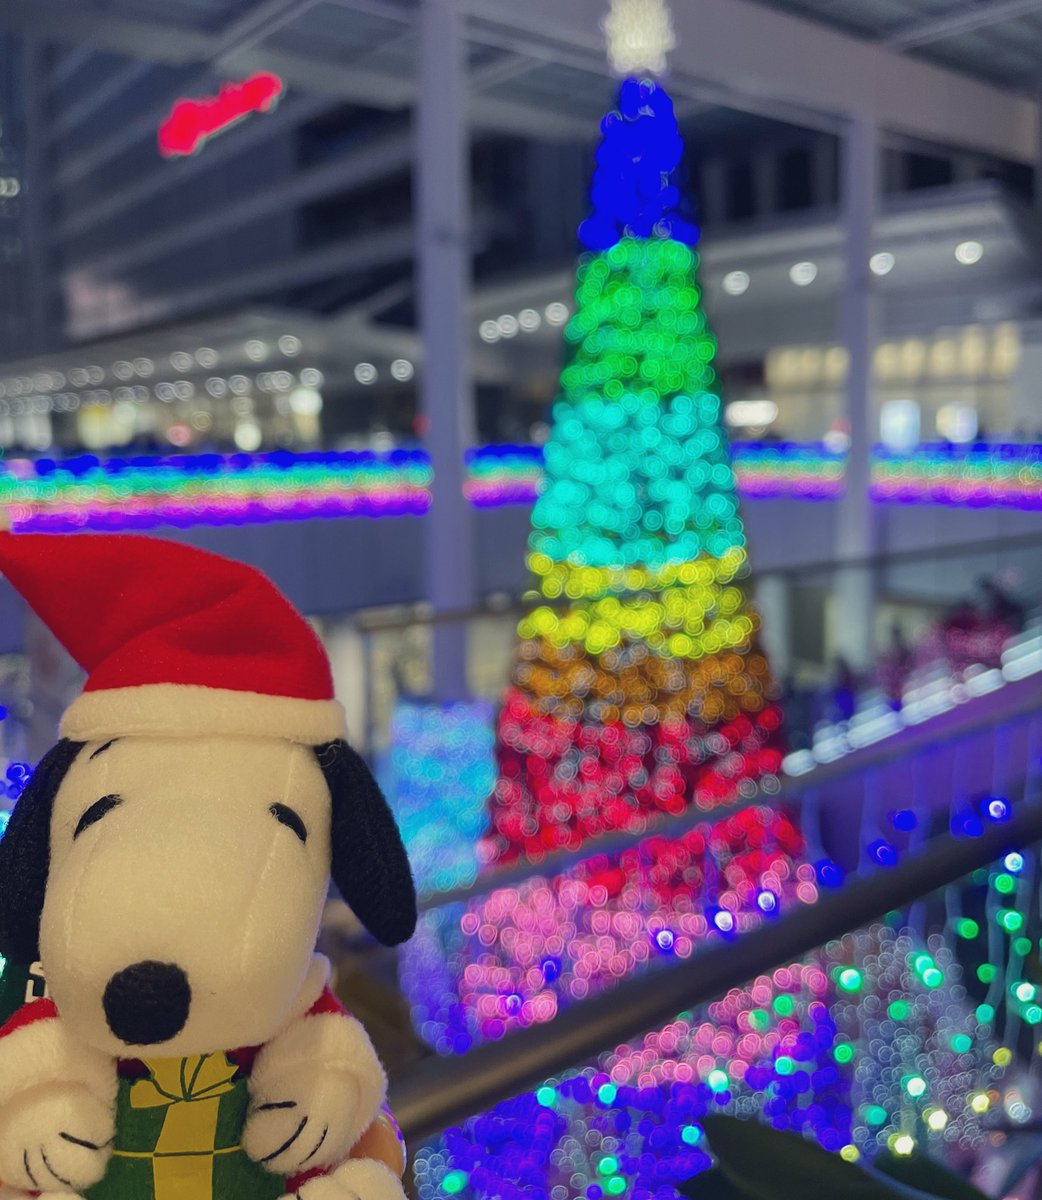 スヌーピー男子 今年もクリスマスイルミネーションの季節がやってきました サンタコスチュームのスヌーピーをお迎えしてツリーと光るブロッコリーと記念撮影 スヌーピー男子 Peanuts Snoopy Peanuts70 ピーナッツ70